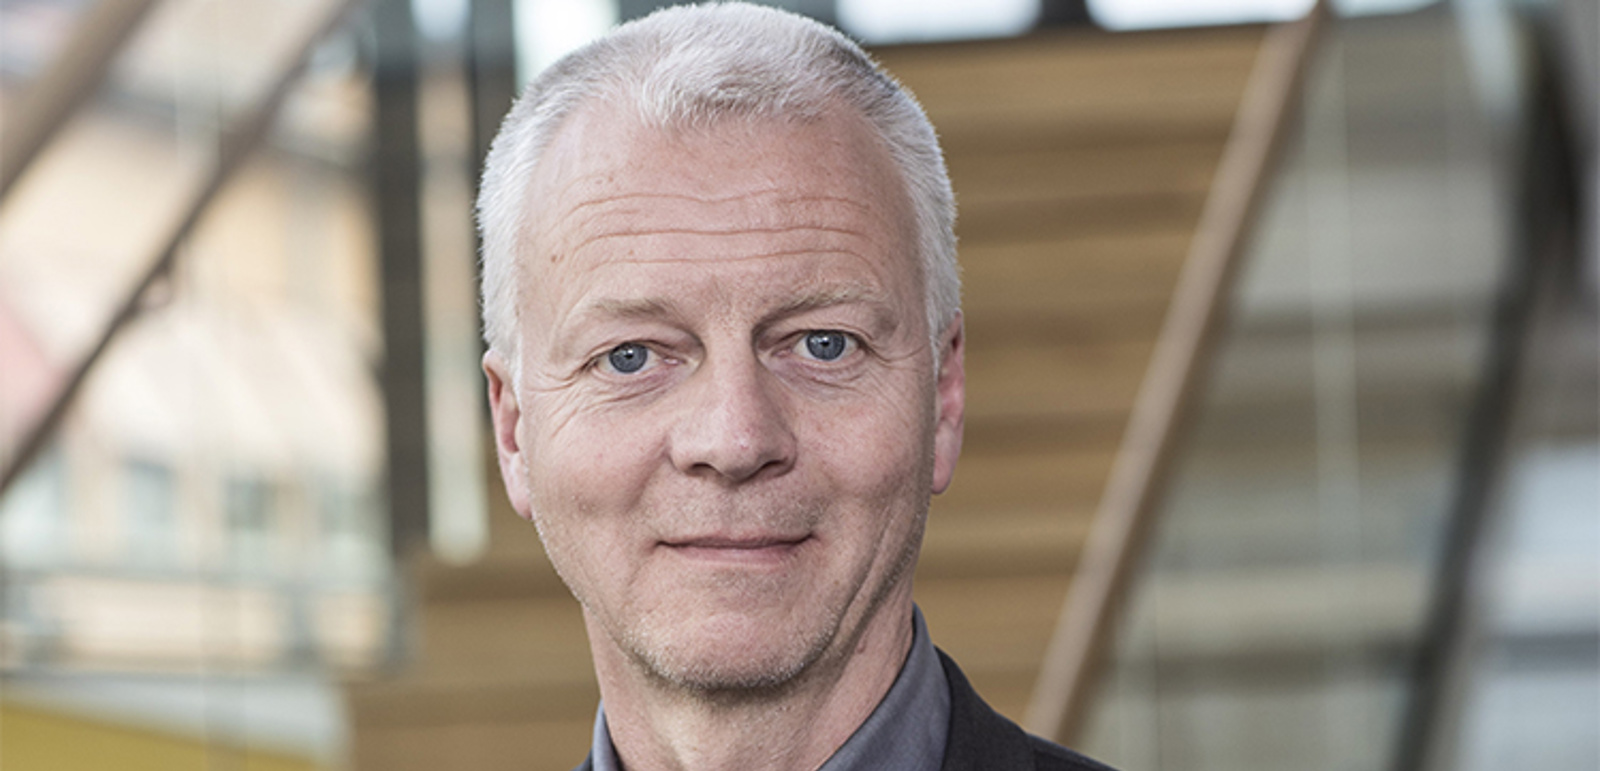 Mats Tinnsten föreslås som kandidat för posten som ny rektor vid Högskolan i Borås